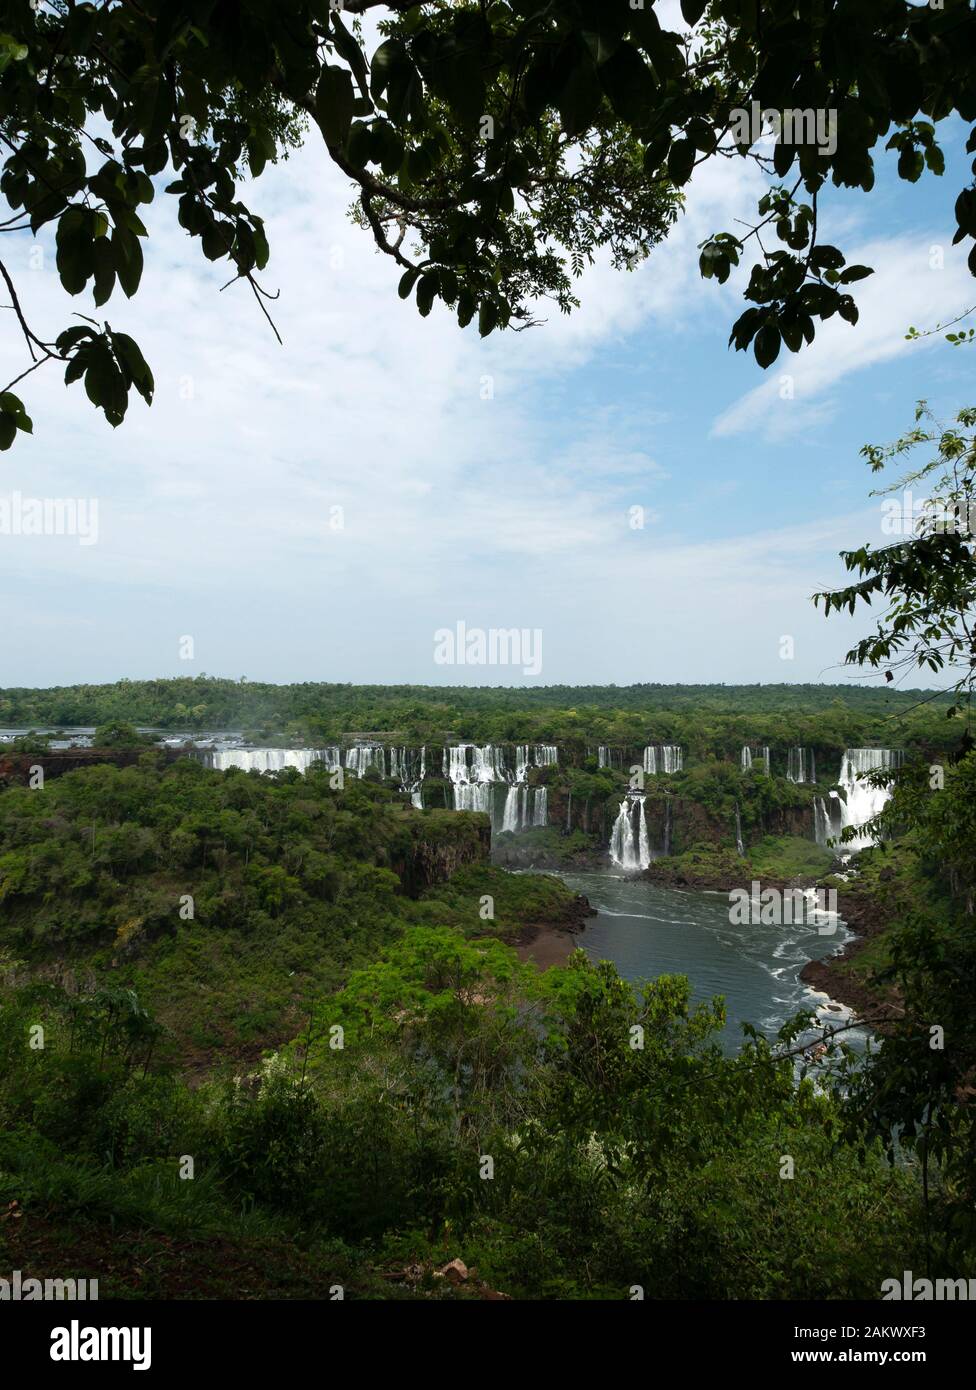 Blick auf die Iguazu Falls (Iguacu Falls) in Argentinien von der brasilianischen Seite der Fälle gesehen. Iguacu Wasserfälle, Brasilien. Stockfoto